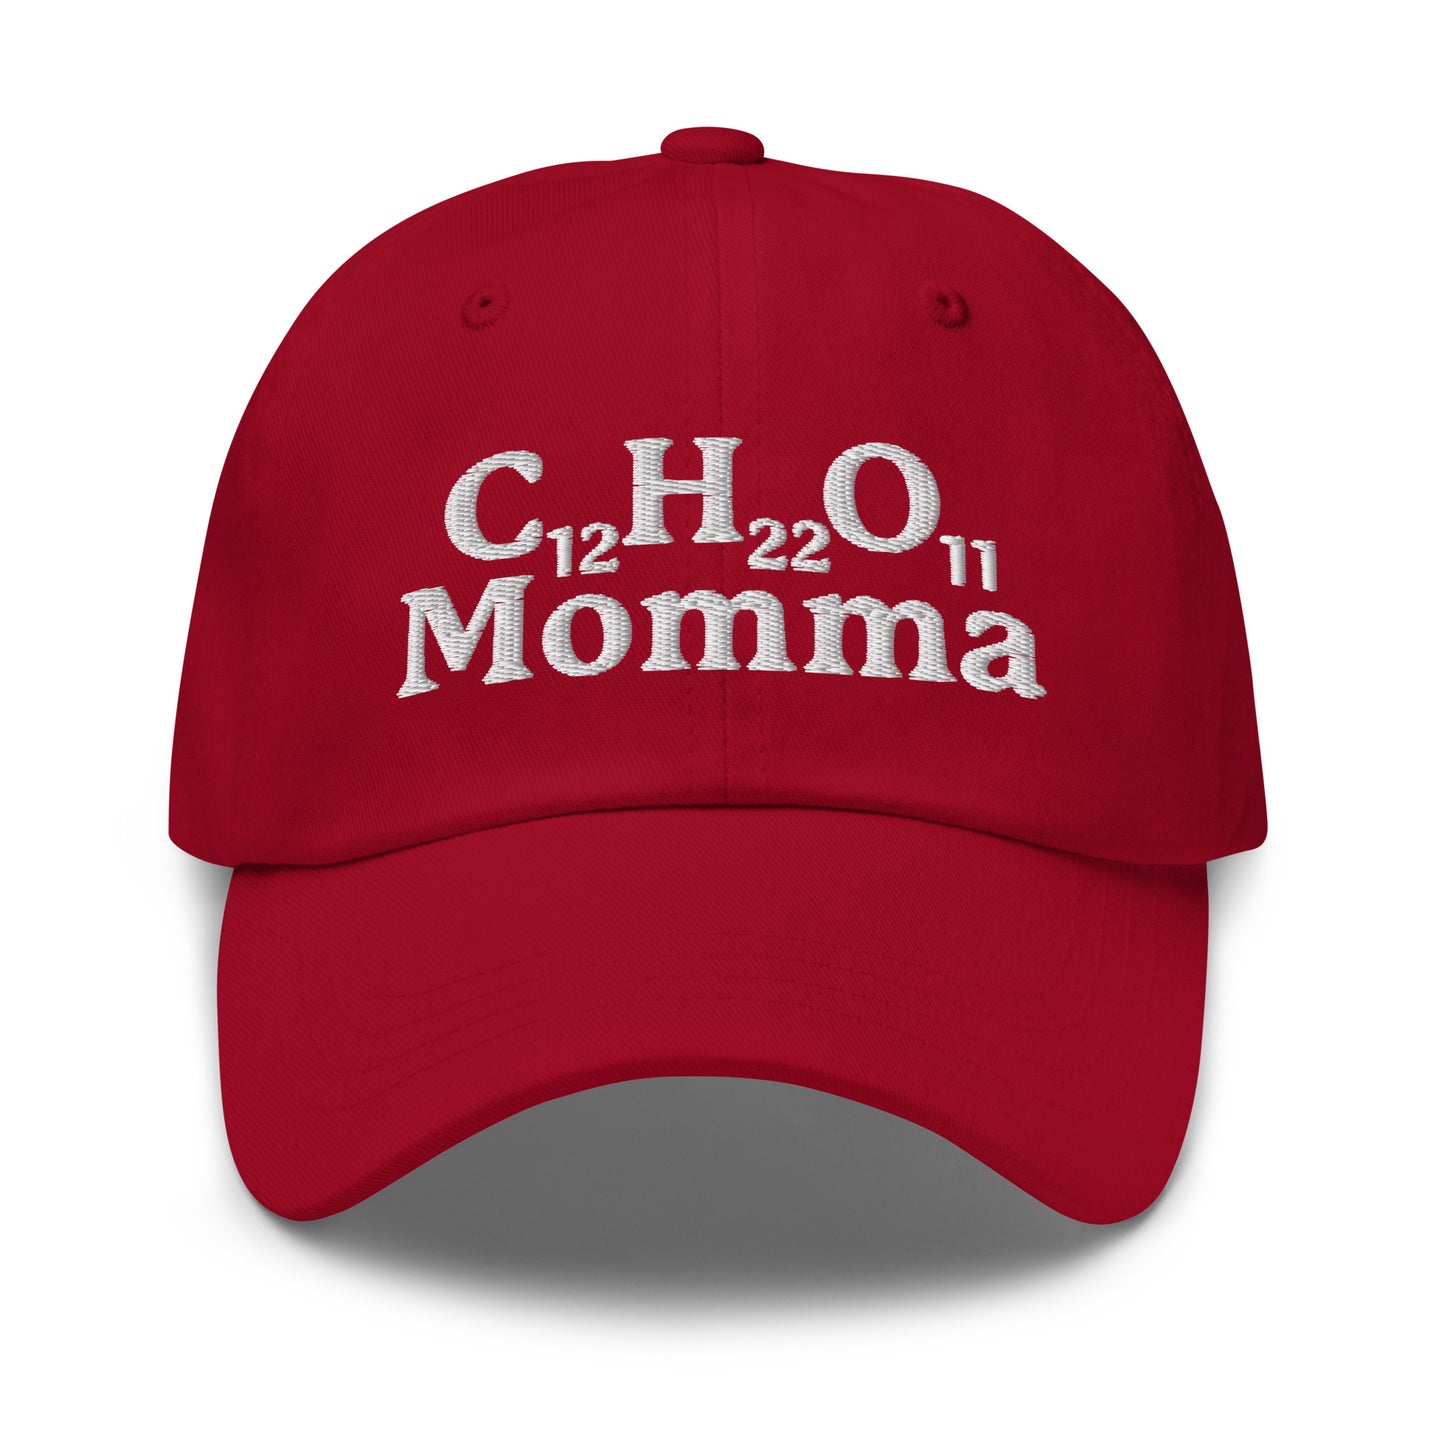 C12H22O11 Momma (Sugar Momma) hat